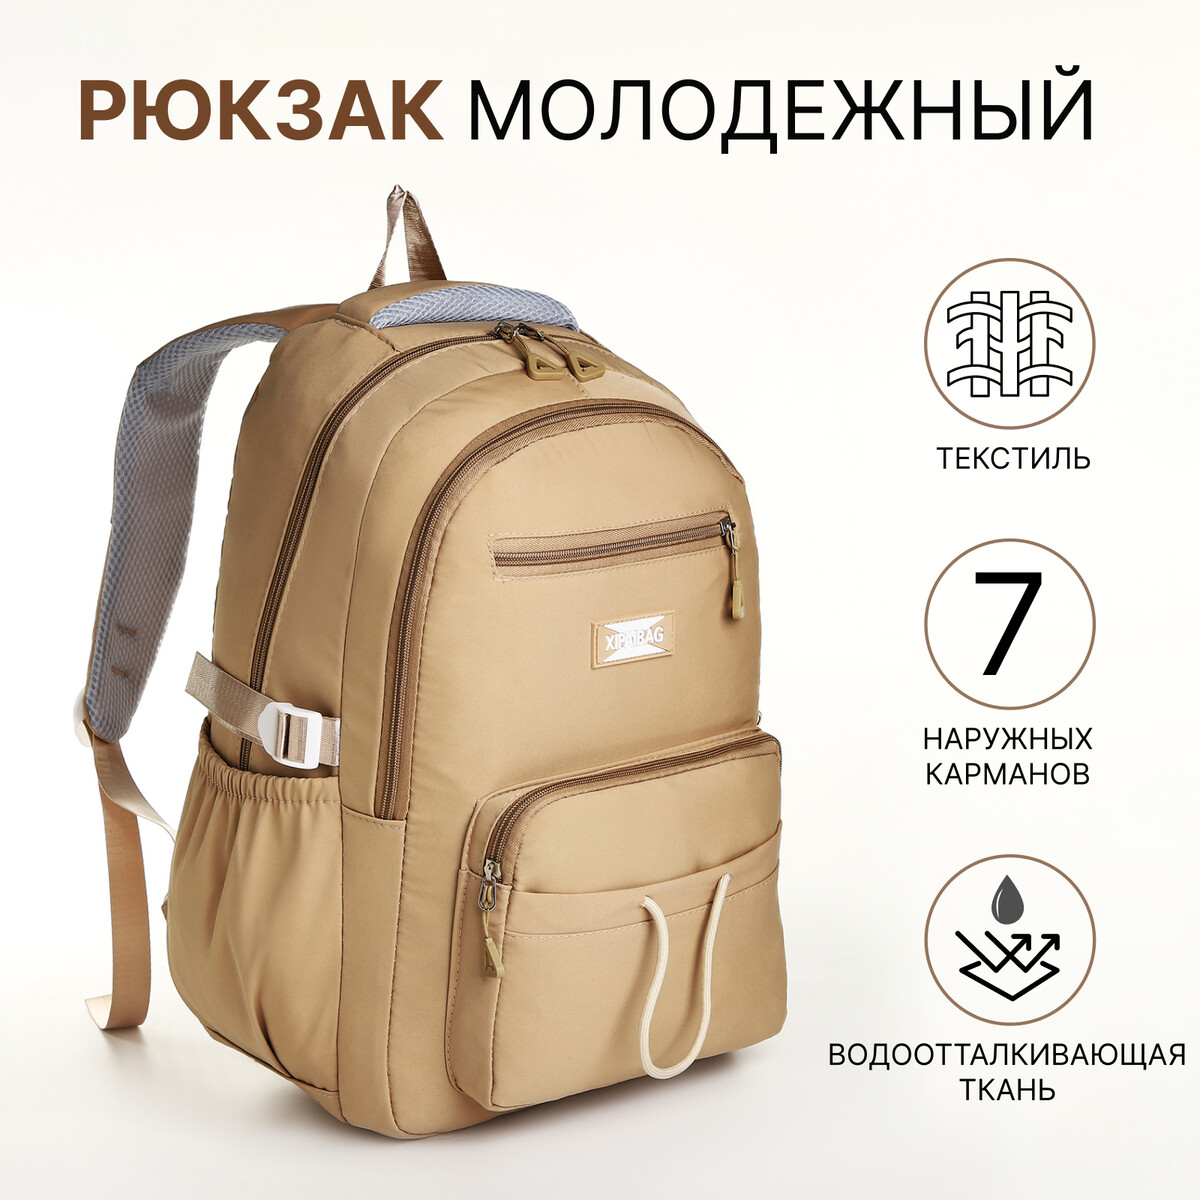 Рюкзак школьный из текстиля на молнии, 7 карманов, цвет коричневый рюкзак школьный из текстиля на молнии 7 карманов